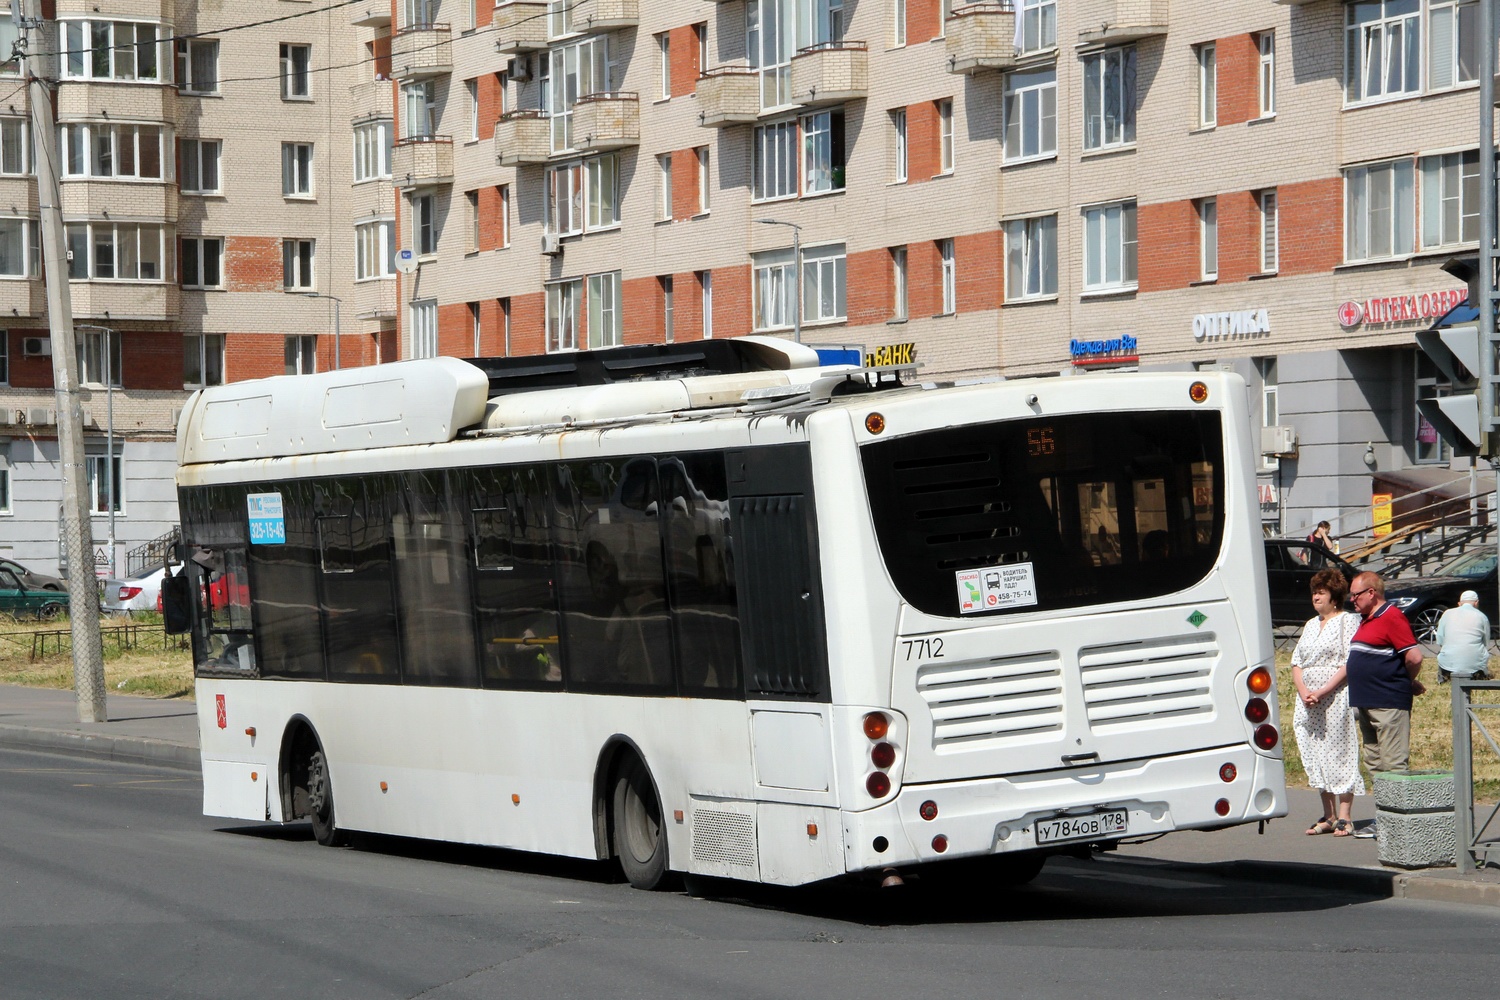 Санкт-Петербург, Volgabus-5270.G2 (CNG) № 7712